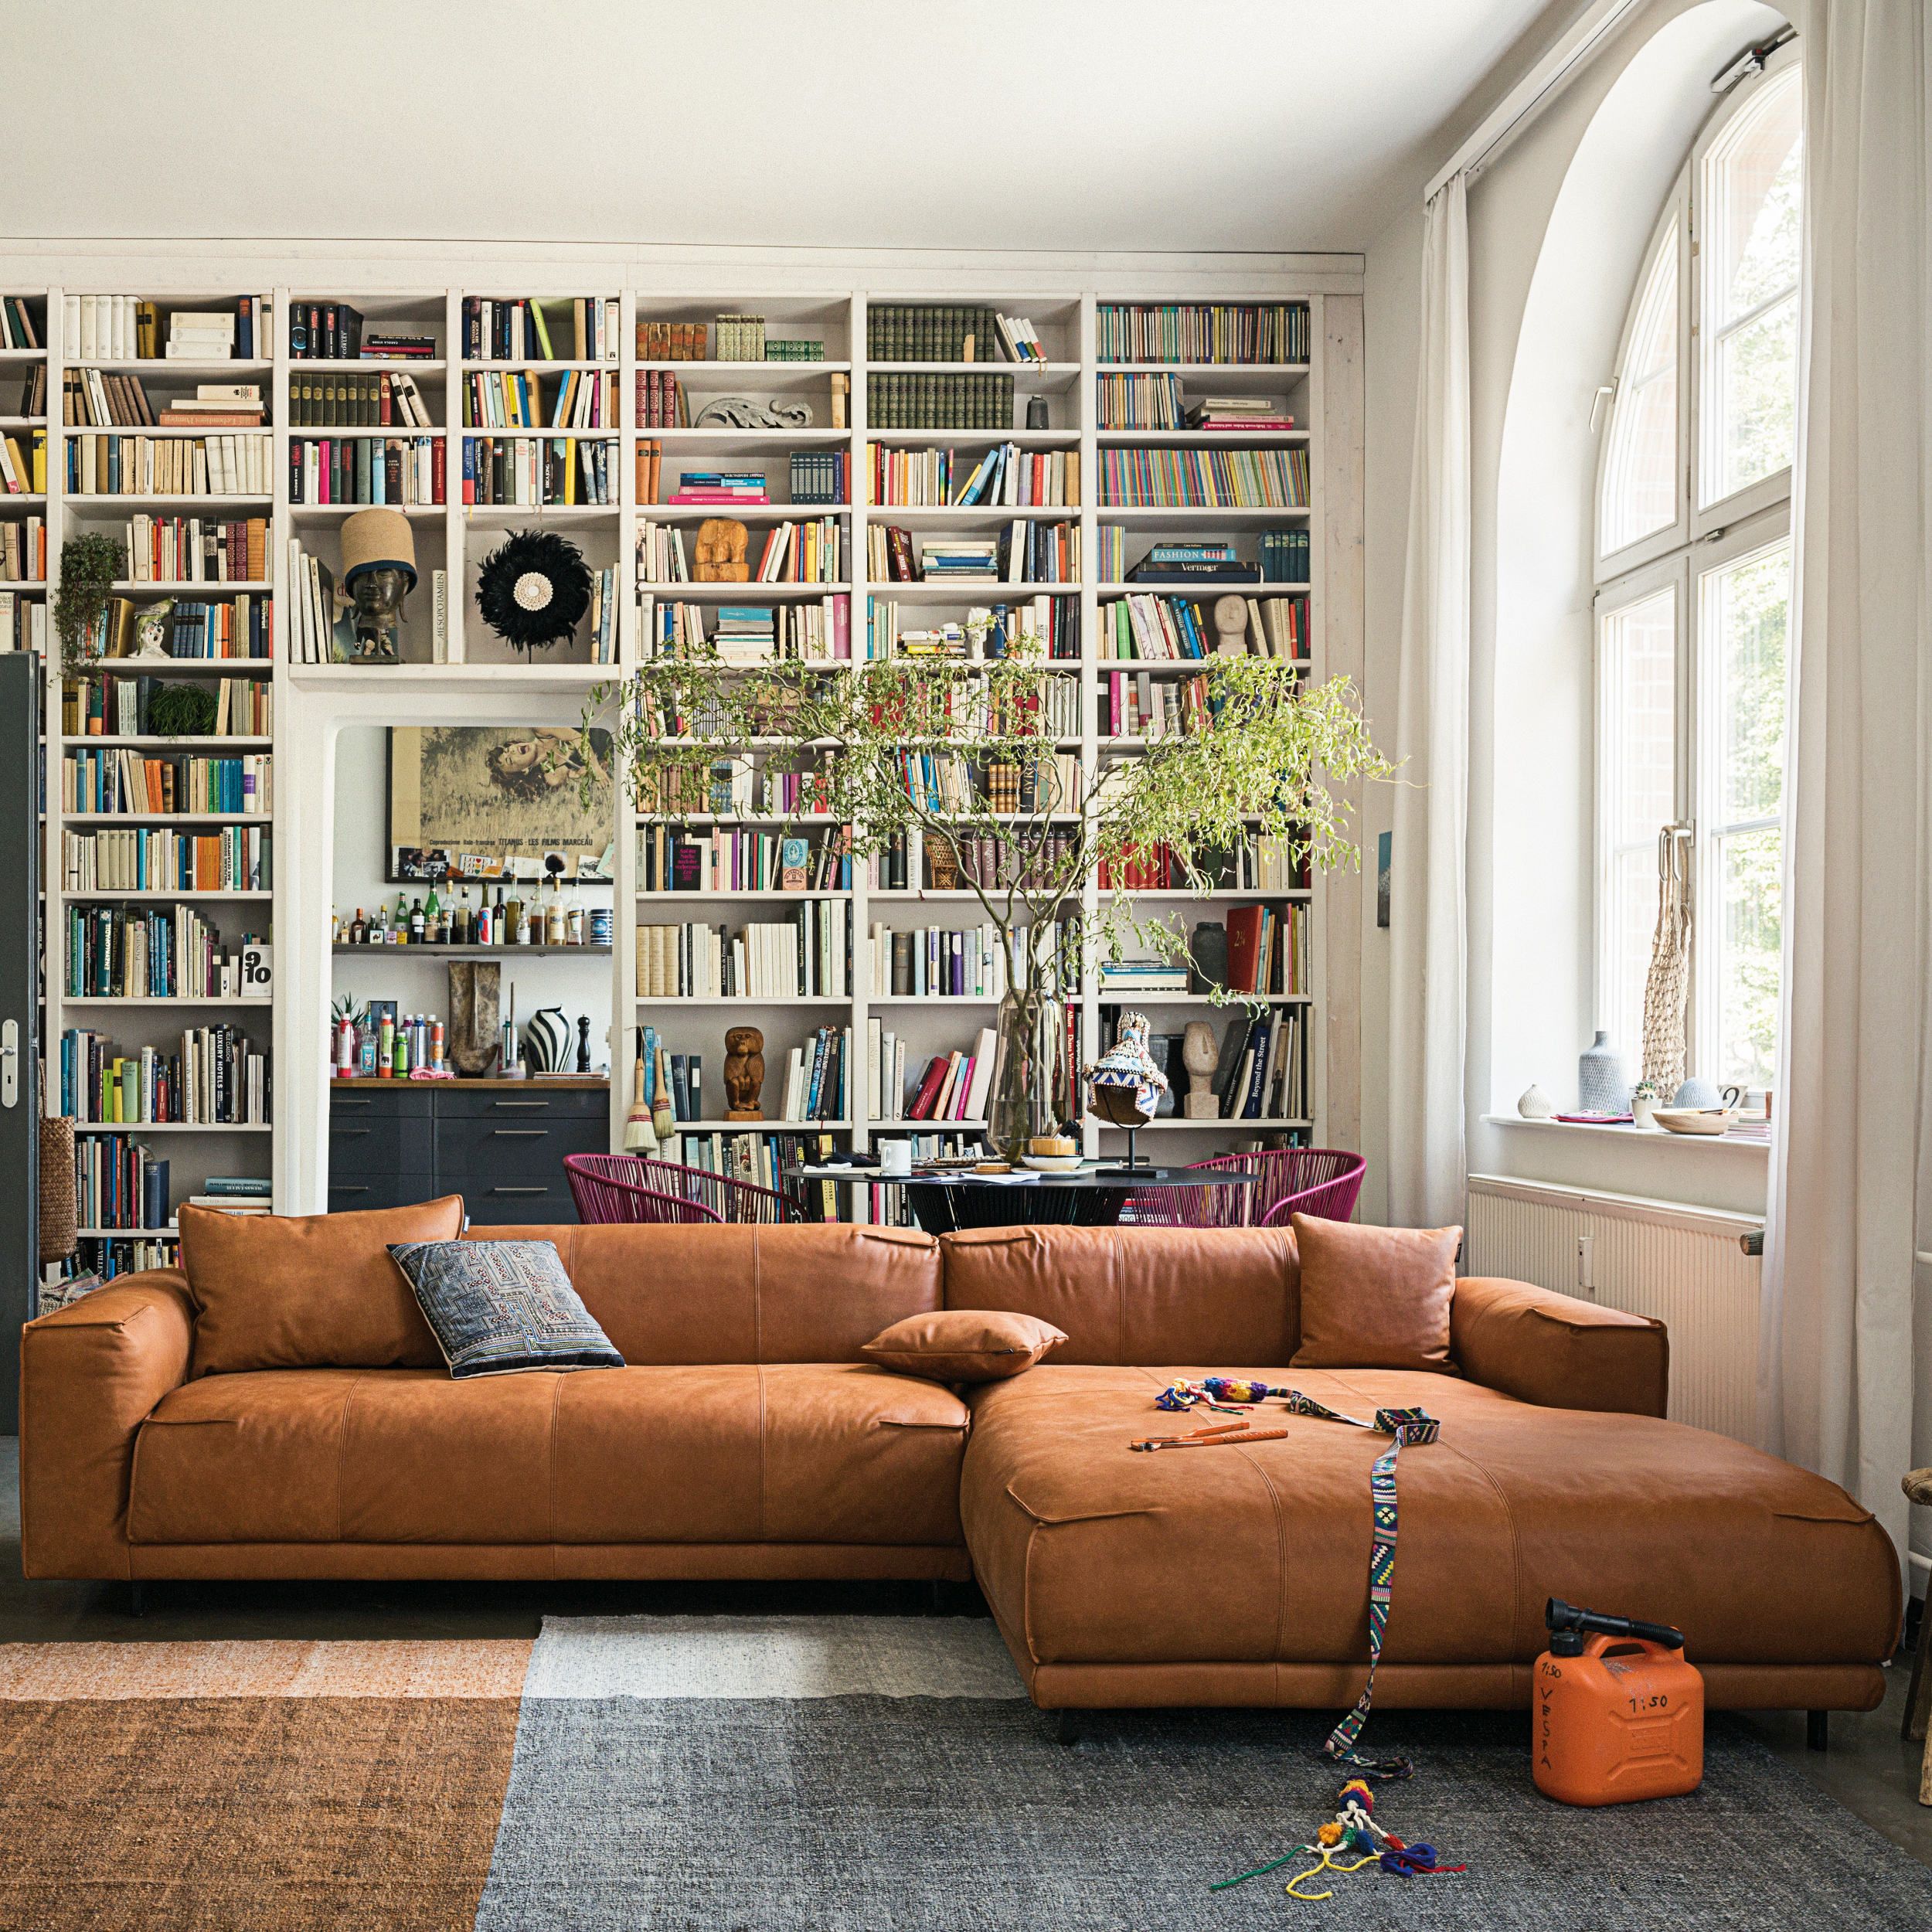 Sofa collection Freistil 136 in braun als Milieubild